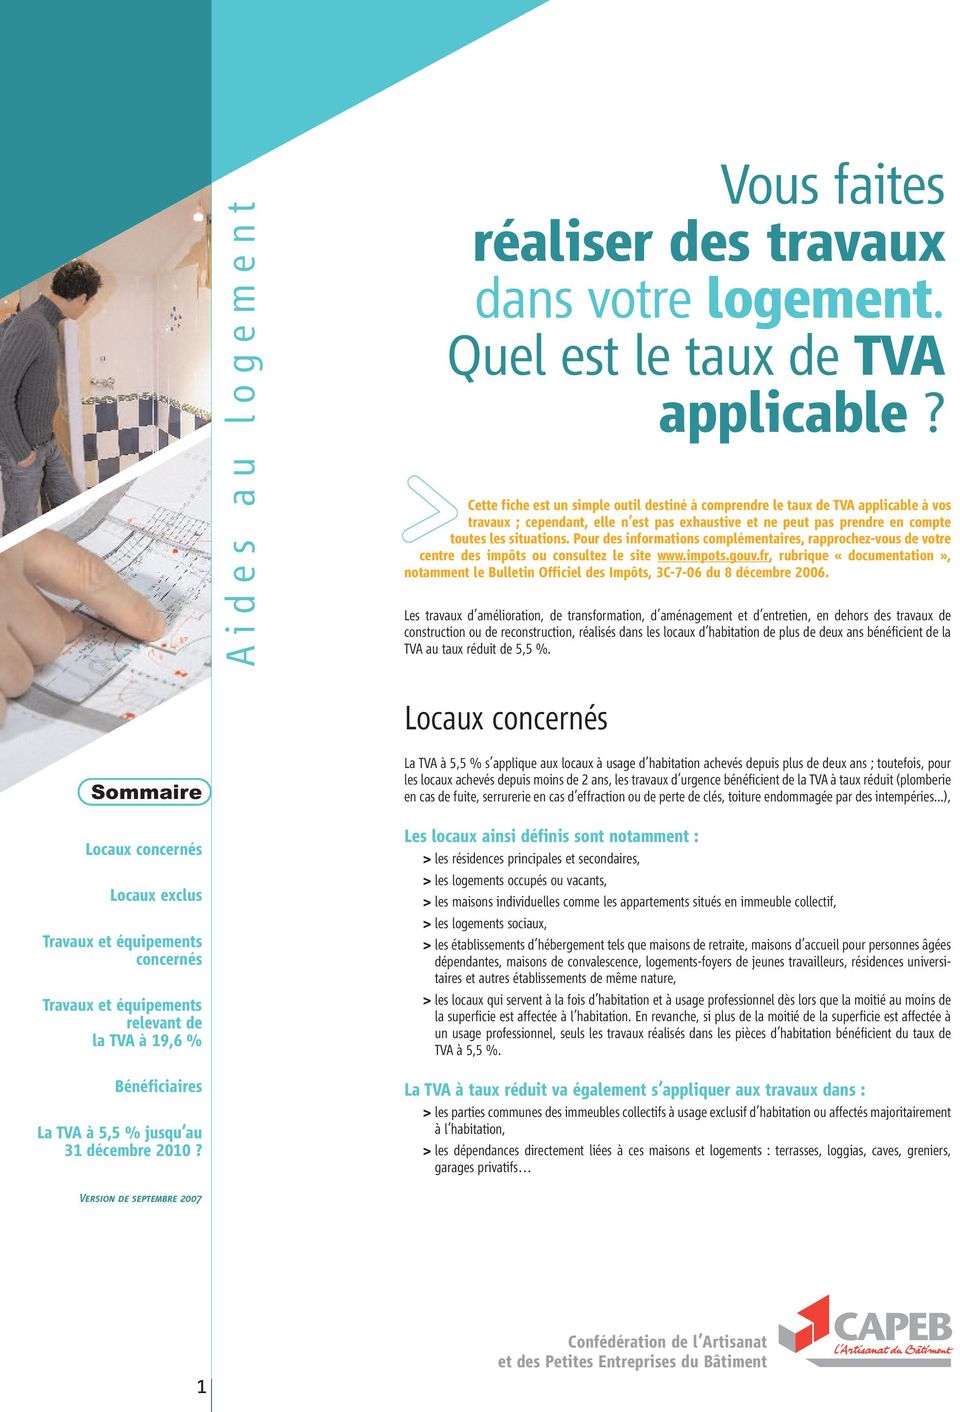 fr, rubrique «documentation», notamment le Bulletin Officiel des Impôts, 3C-7-06 du 8 décembre 2006.